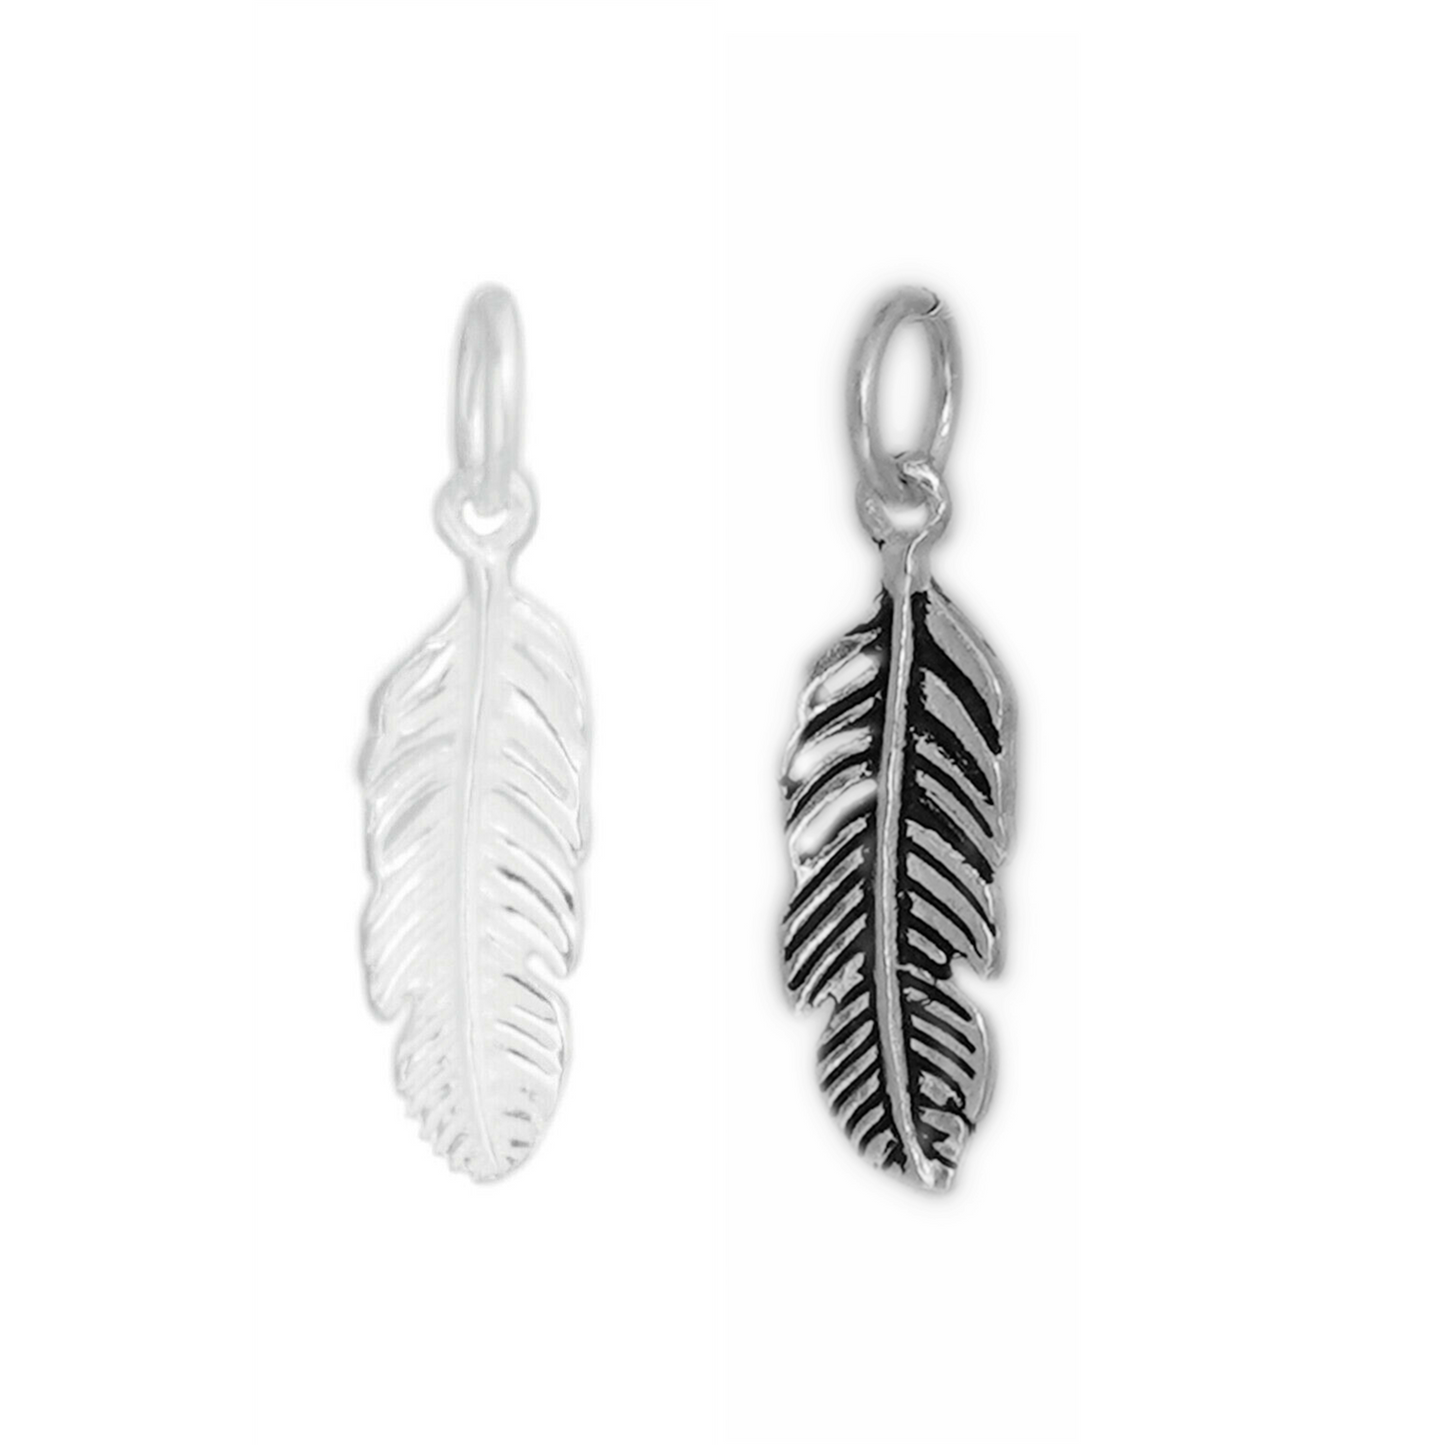 Sterling Silver Feather Angel Leaf Wing Earring Bracelet Necklace Charm Pendant - sugarkittenlondon